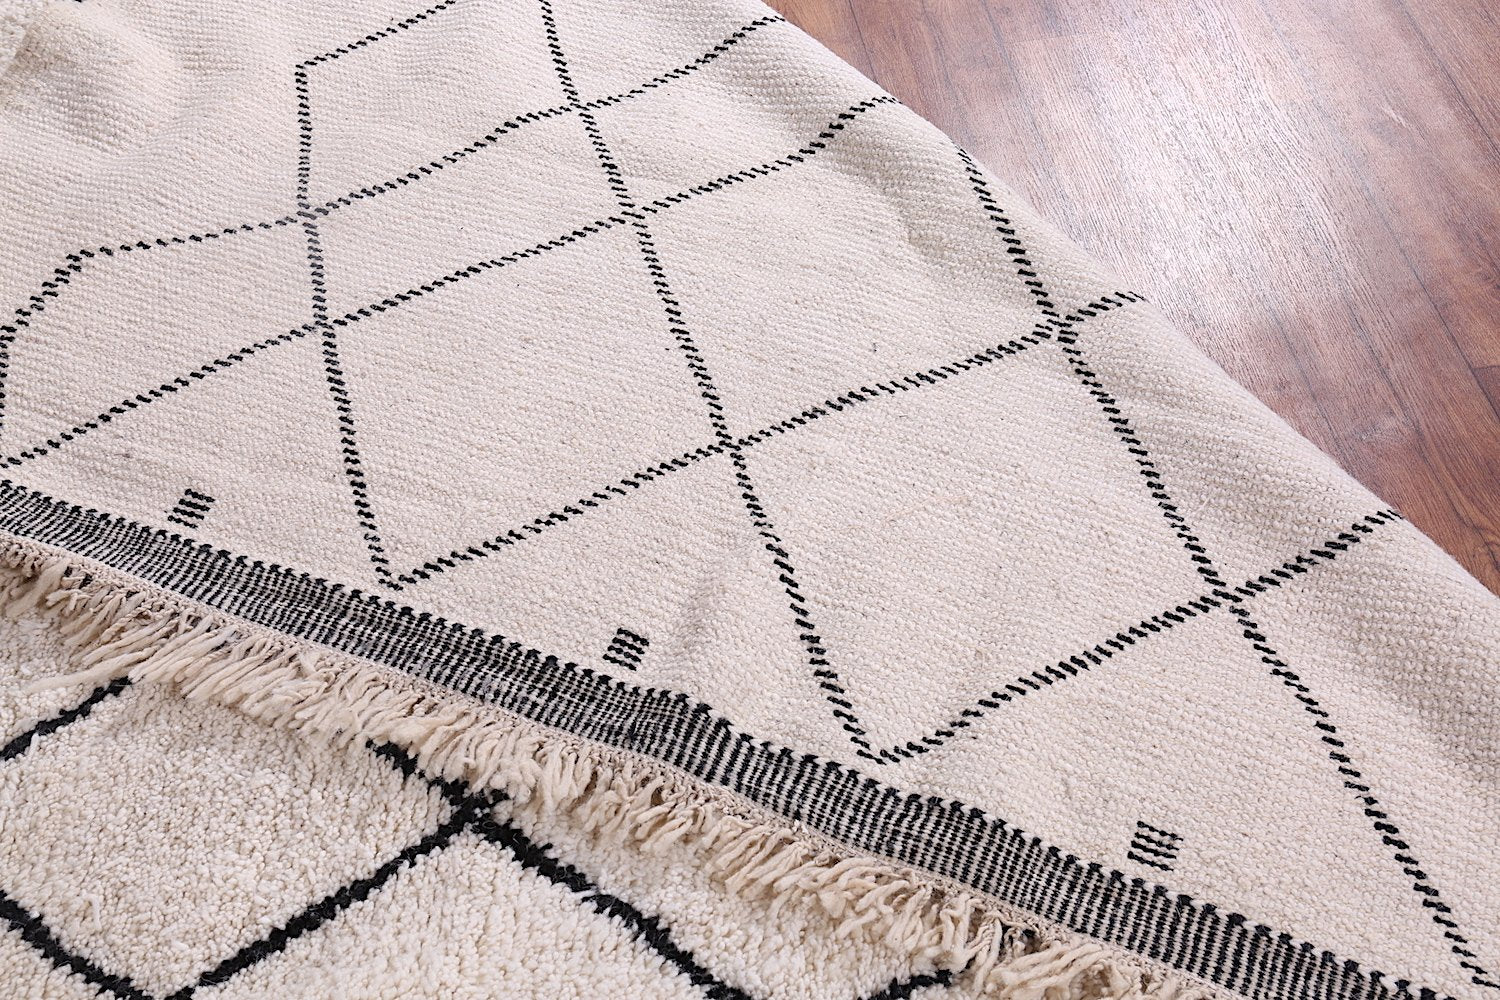 Custom Moroccan rug, Wool berber handmade carpet